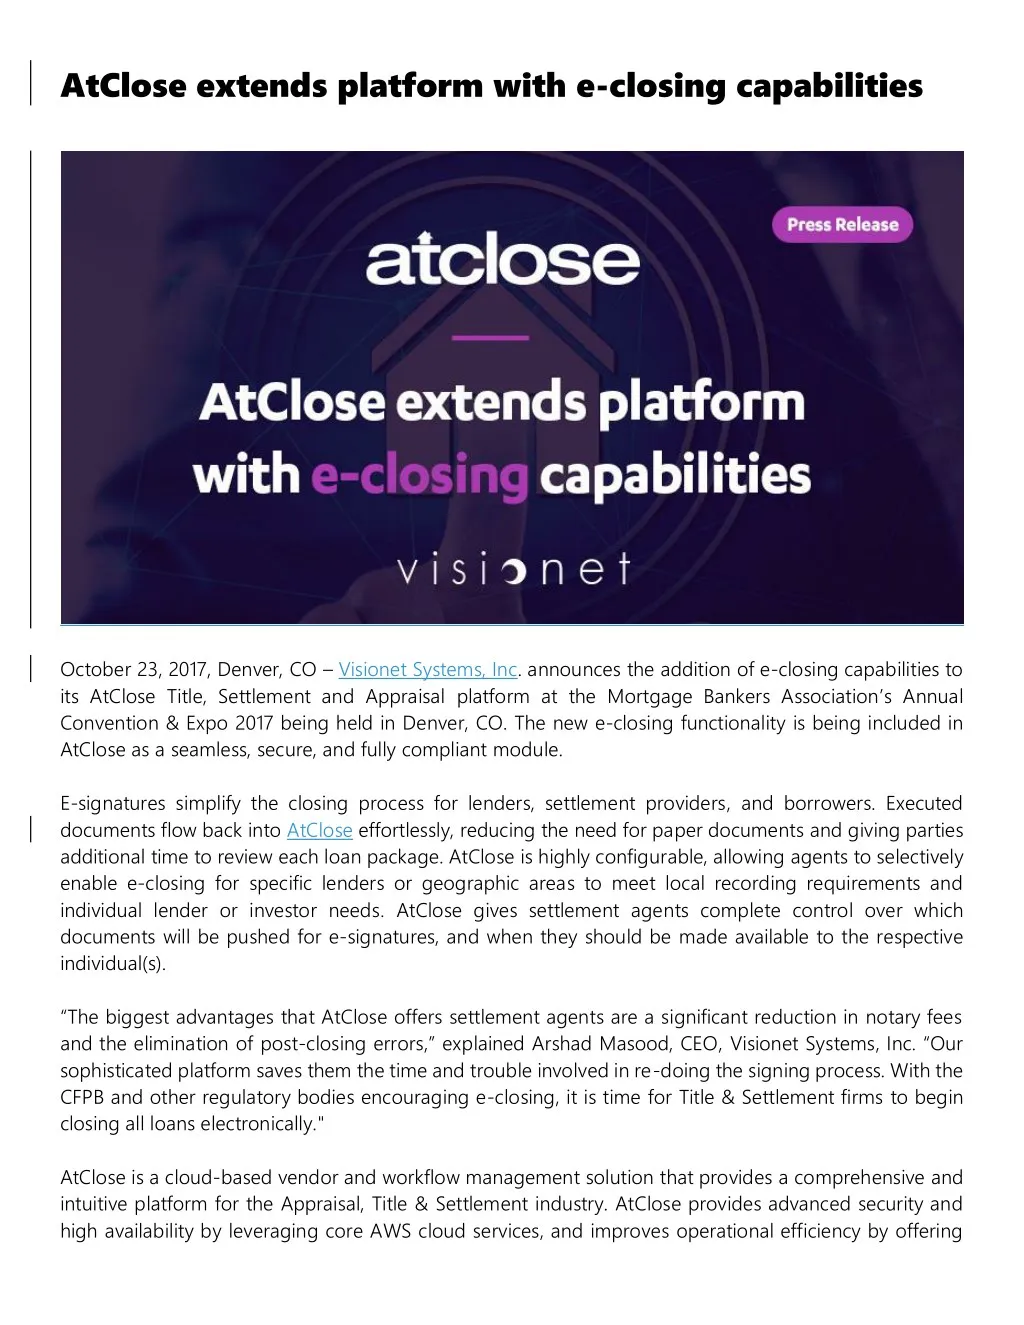 atclose extends platform with e closing